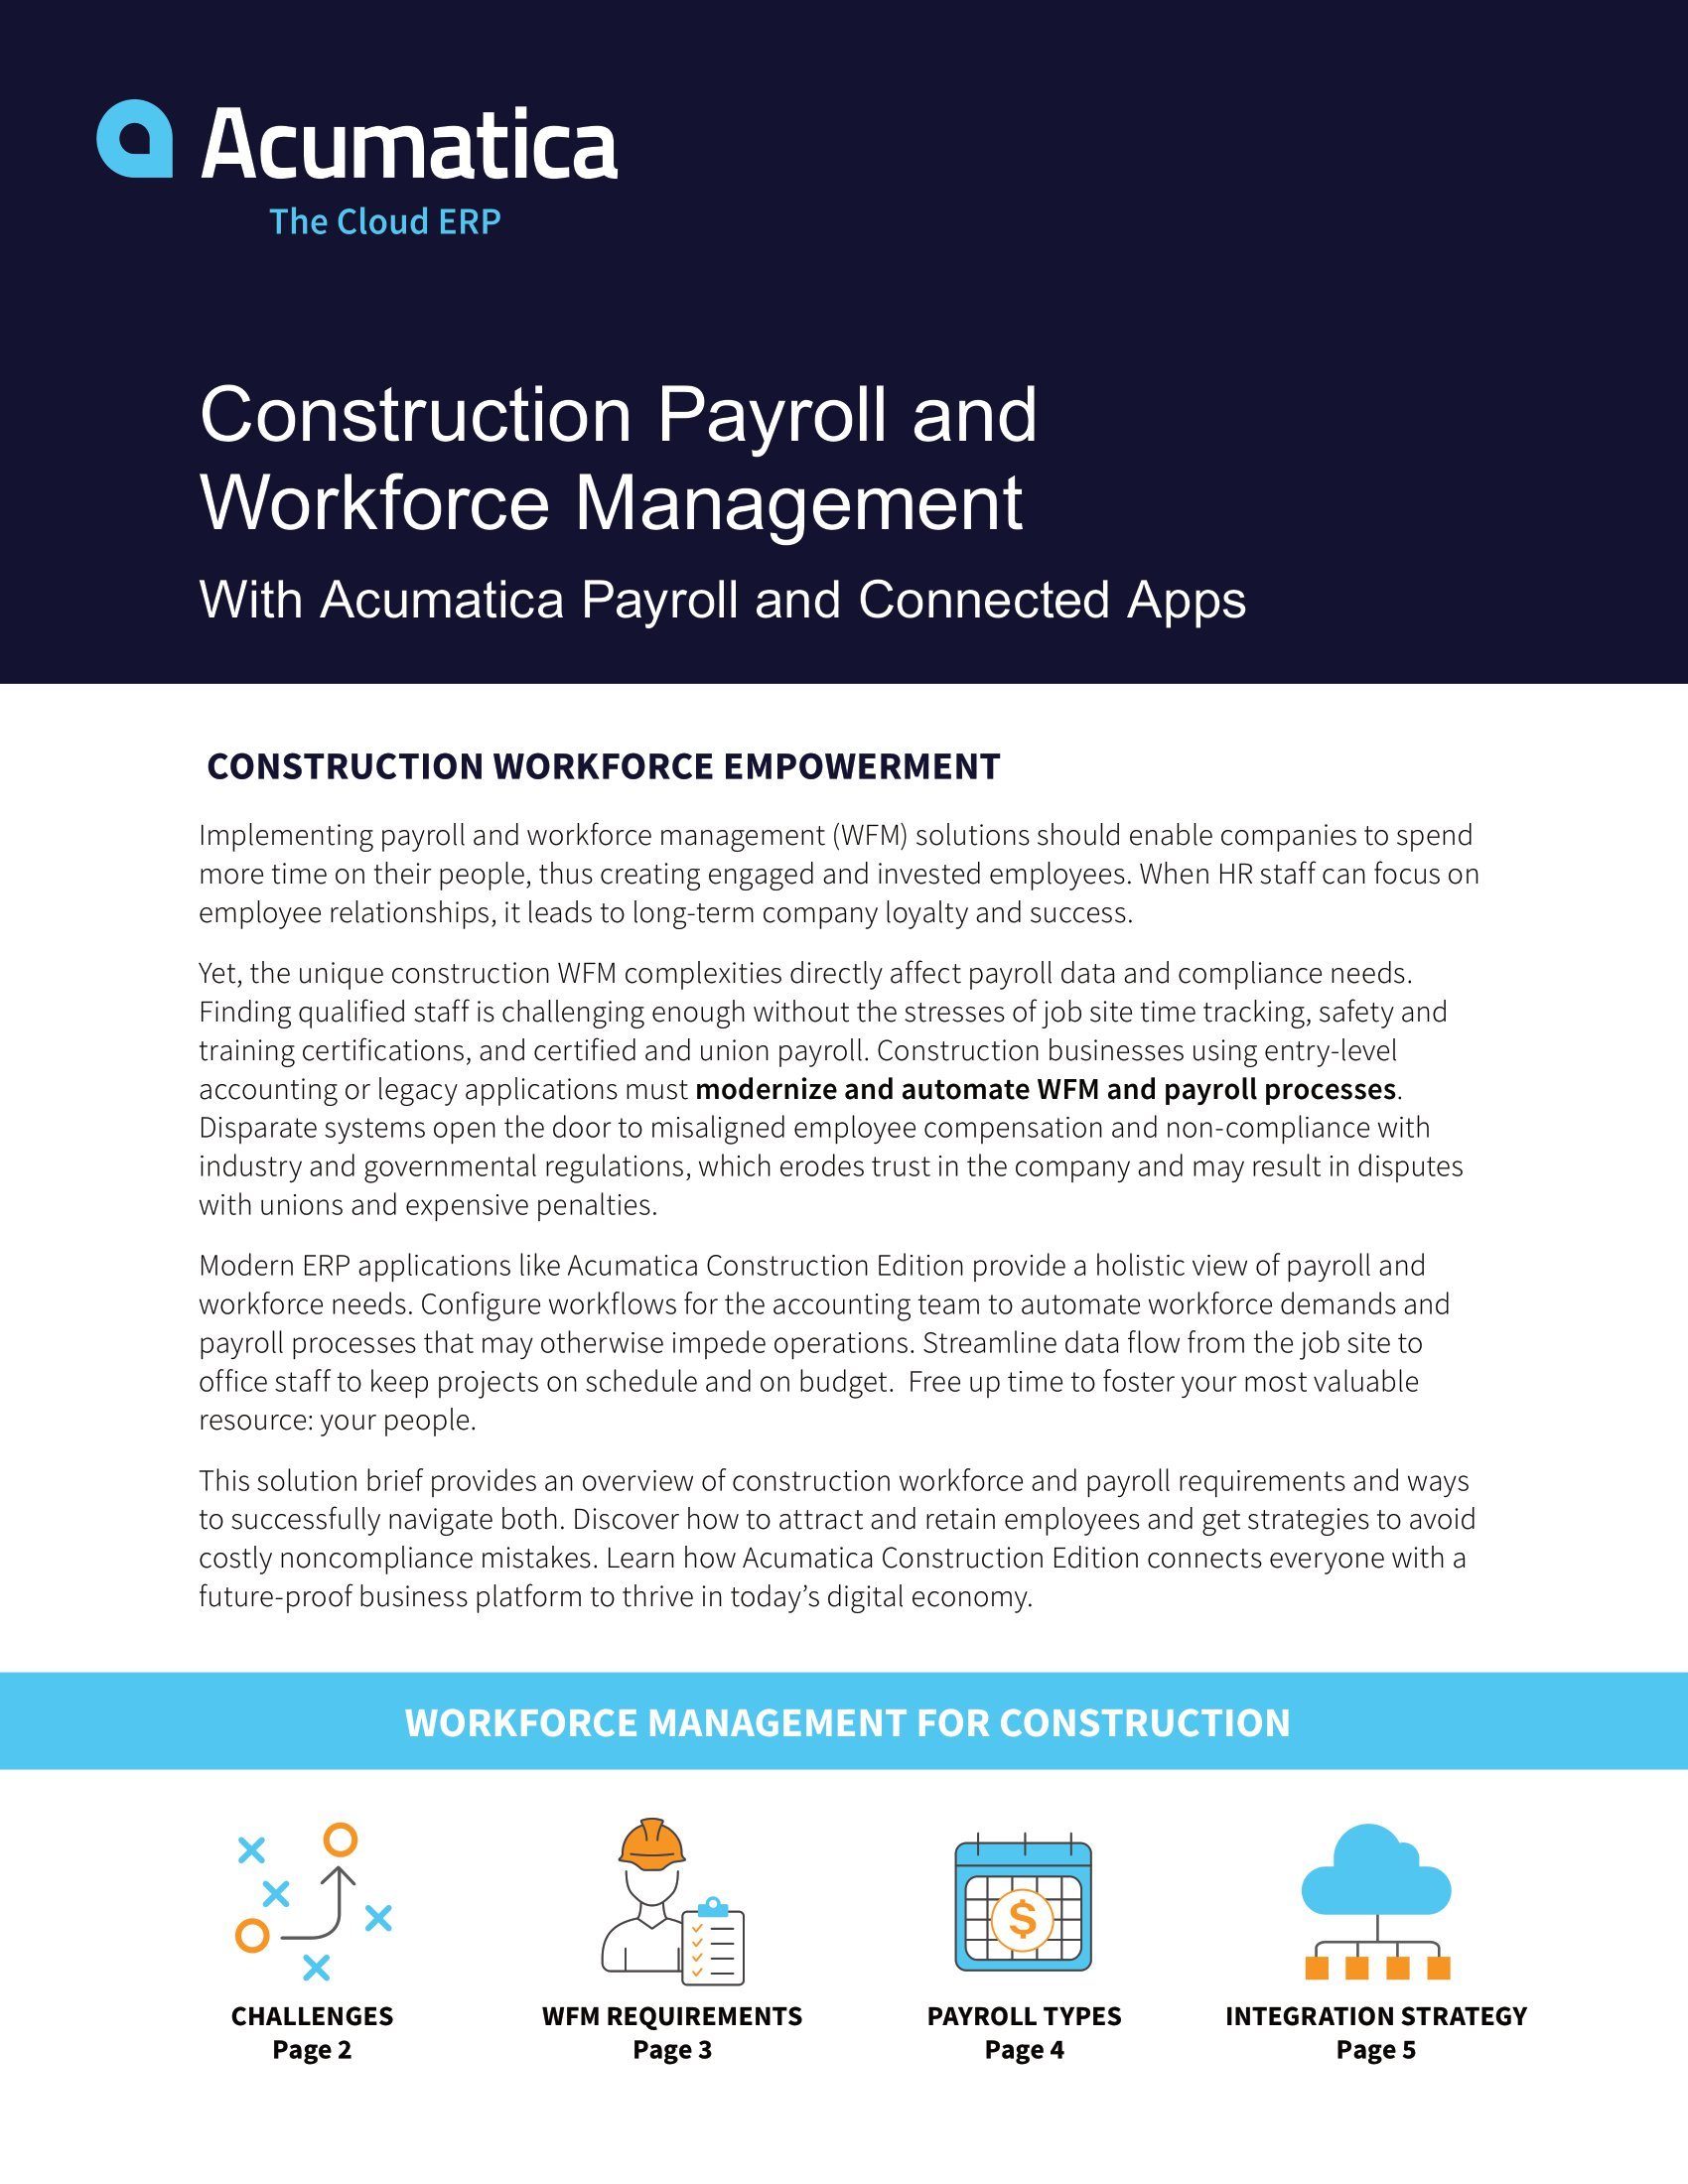 Cómo Acumatica Construction Edition ayuda a las empresas de construcción a superar los desafíos comunes de la fuerza laboral y la nómina, página 0